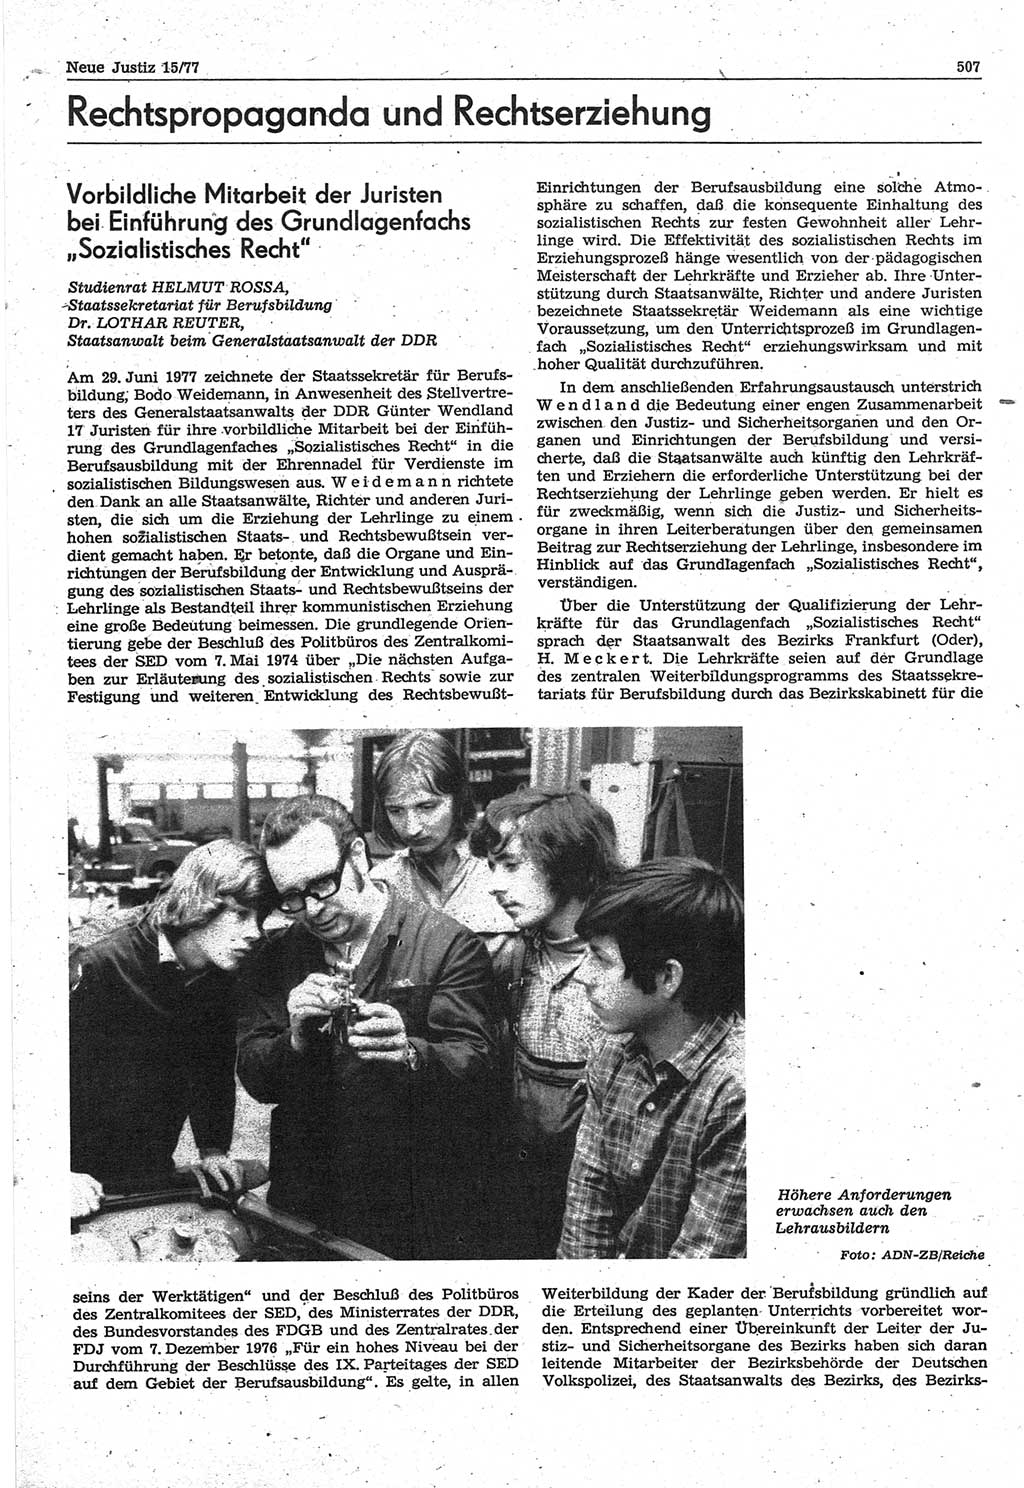 Neue Justiz (NJ), Zeitschrift für Recht und Rechtswissenschaft-Zeitschrift, sozialistisches Recht und Gesetzlichkeit, 31. Jahrgang 1977, Seite 507 (NJ DDR 1977, S. 507)